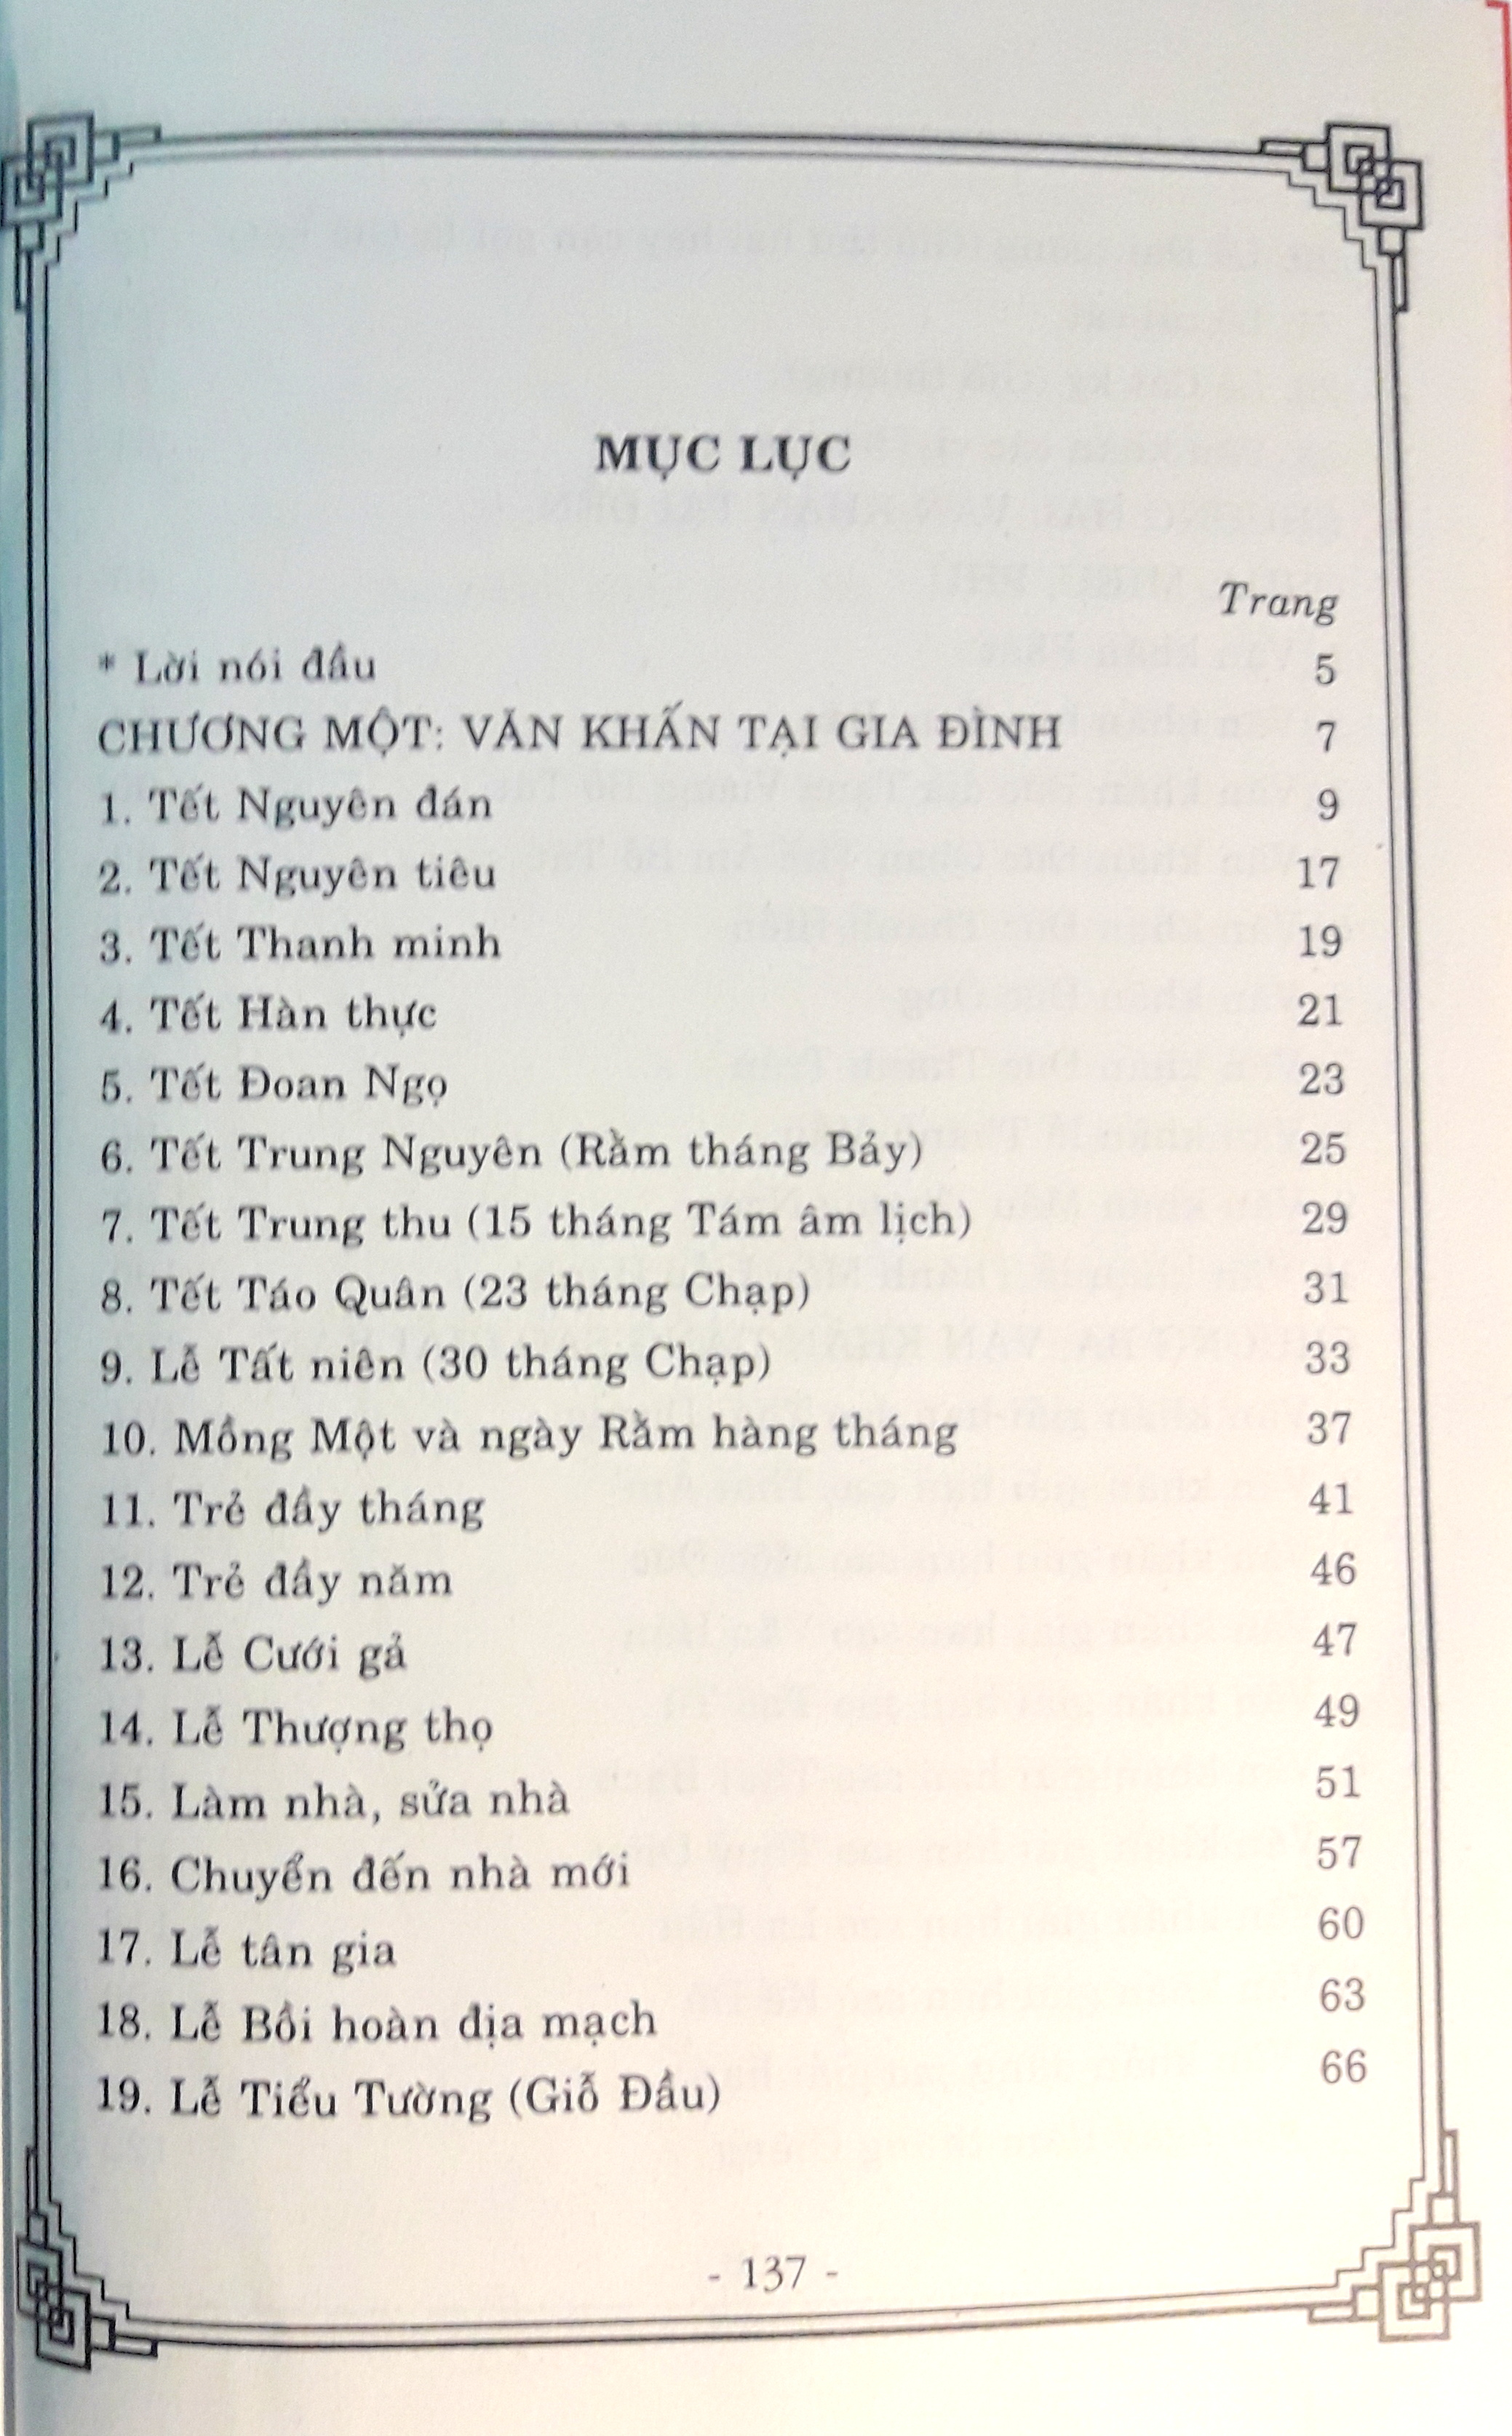 Văn khấn cổ truyền Việt Nam ( chỉnh lý, hiệu đính )